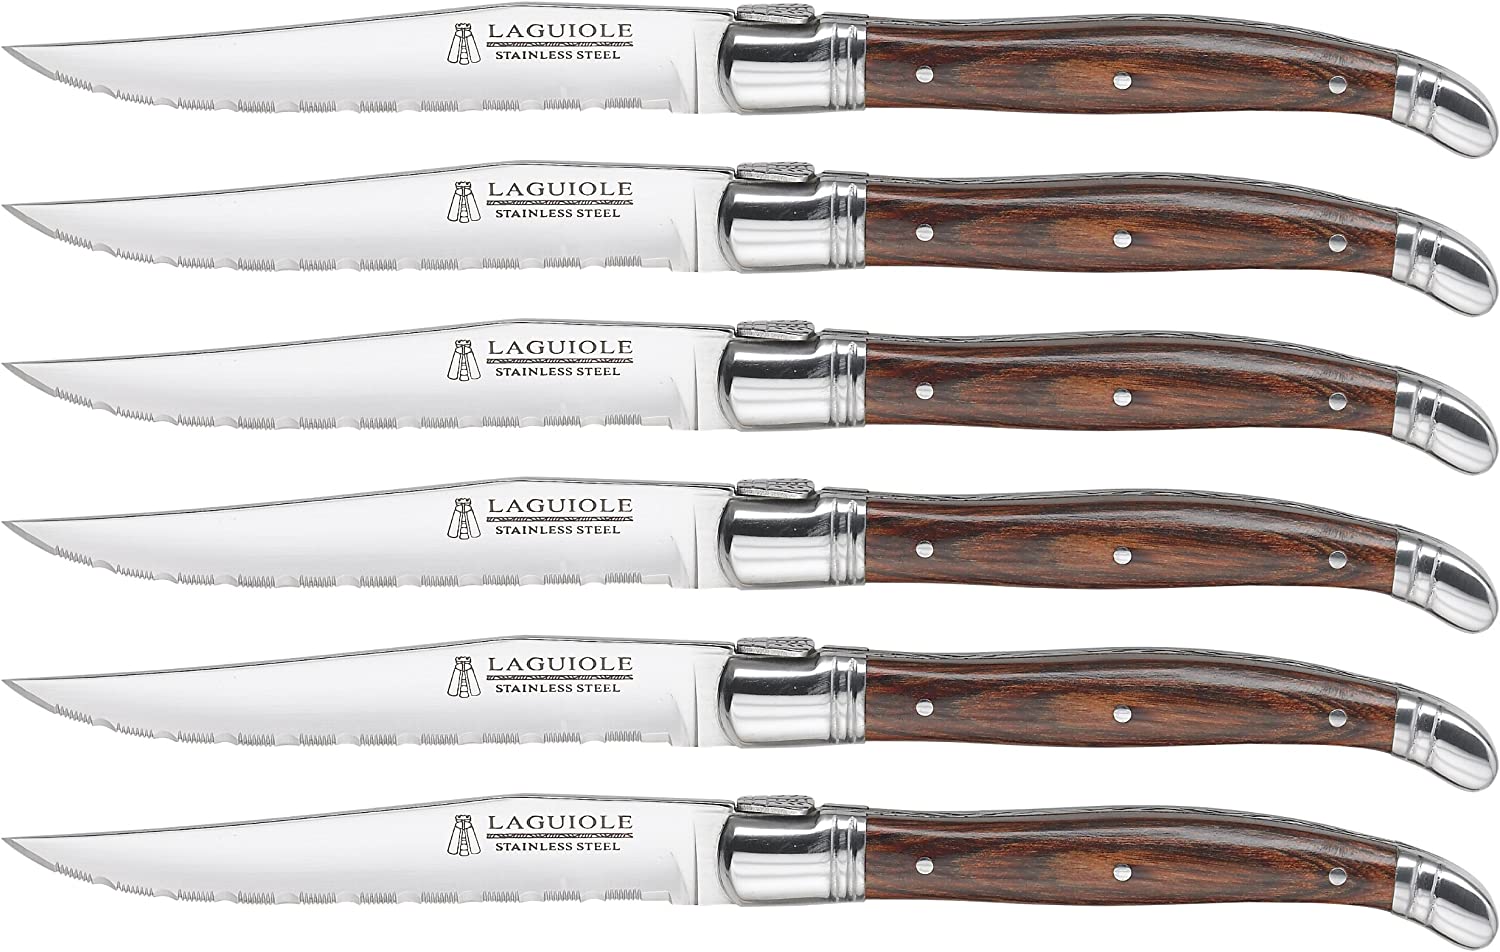 Heritage Steak Knife - Set of 4 – Everlastly